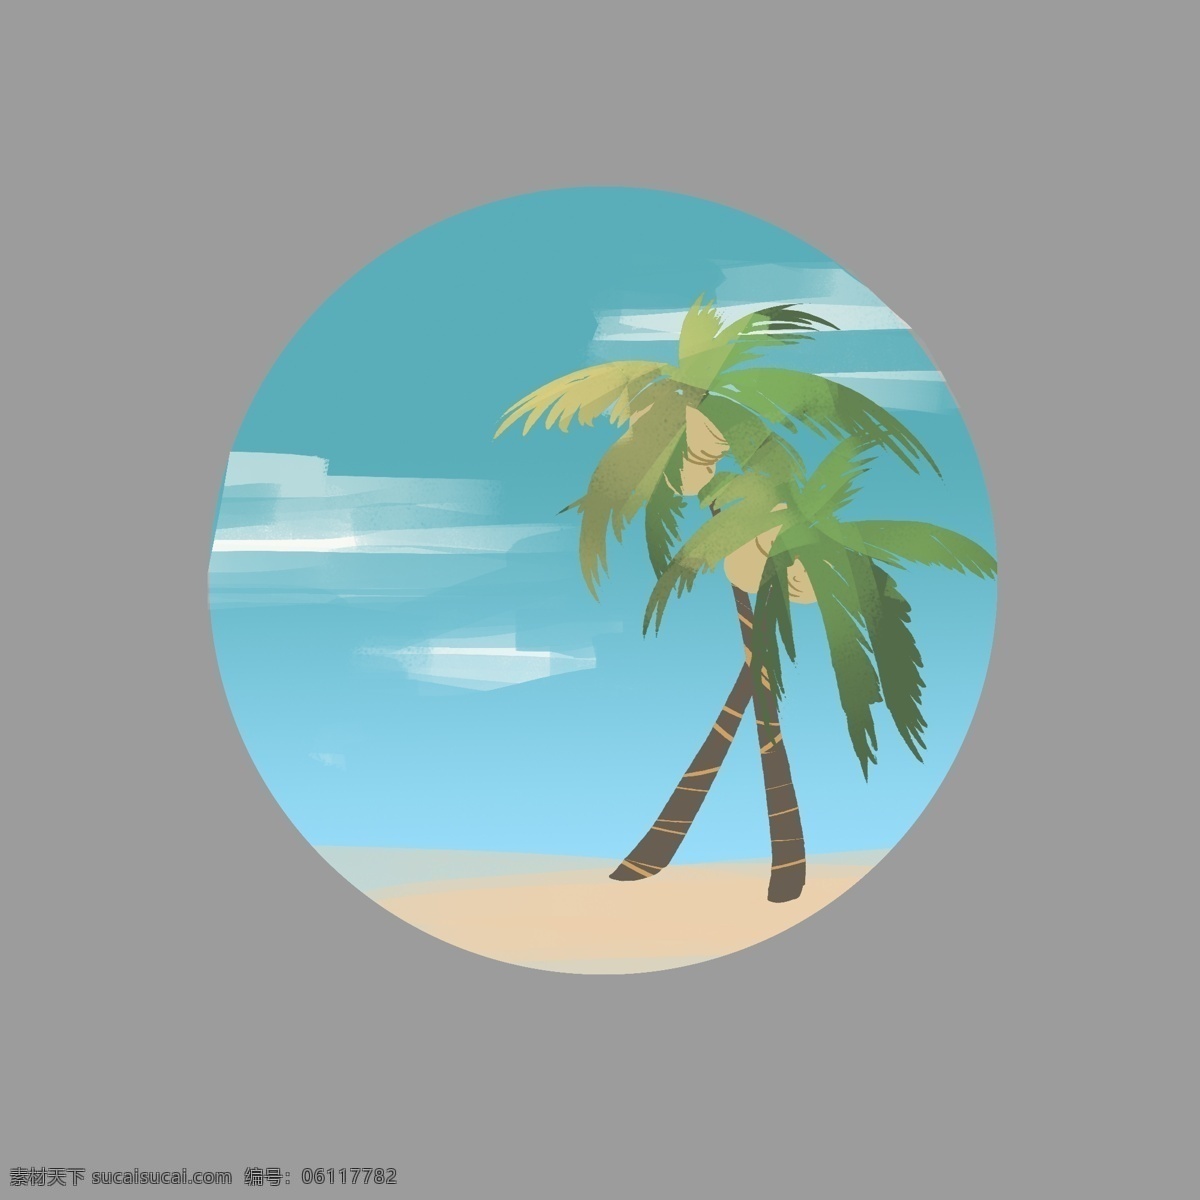 夏季 棕榈树 椰子树 夏天 沙滩